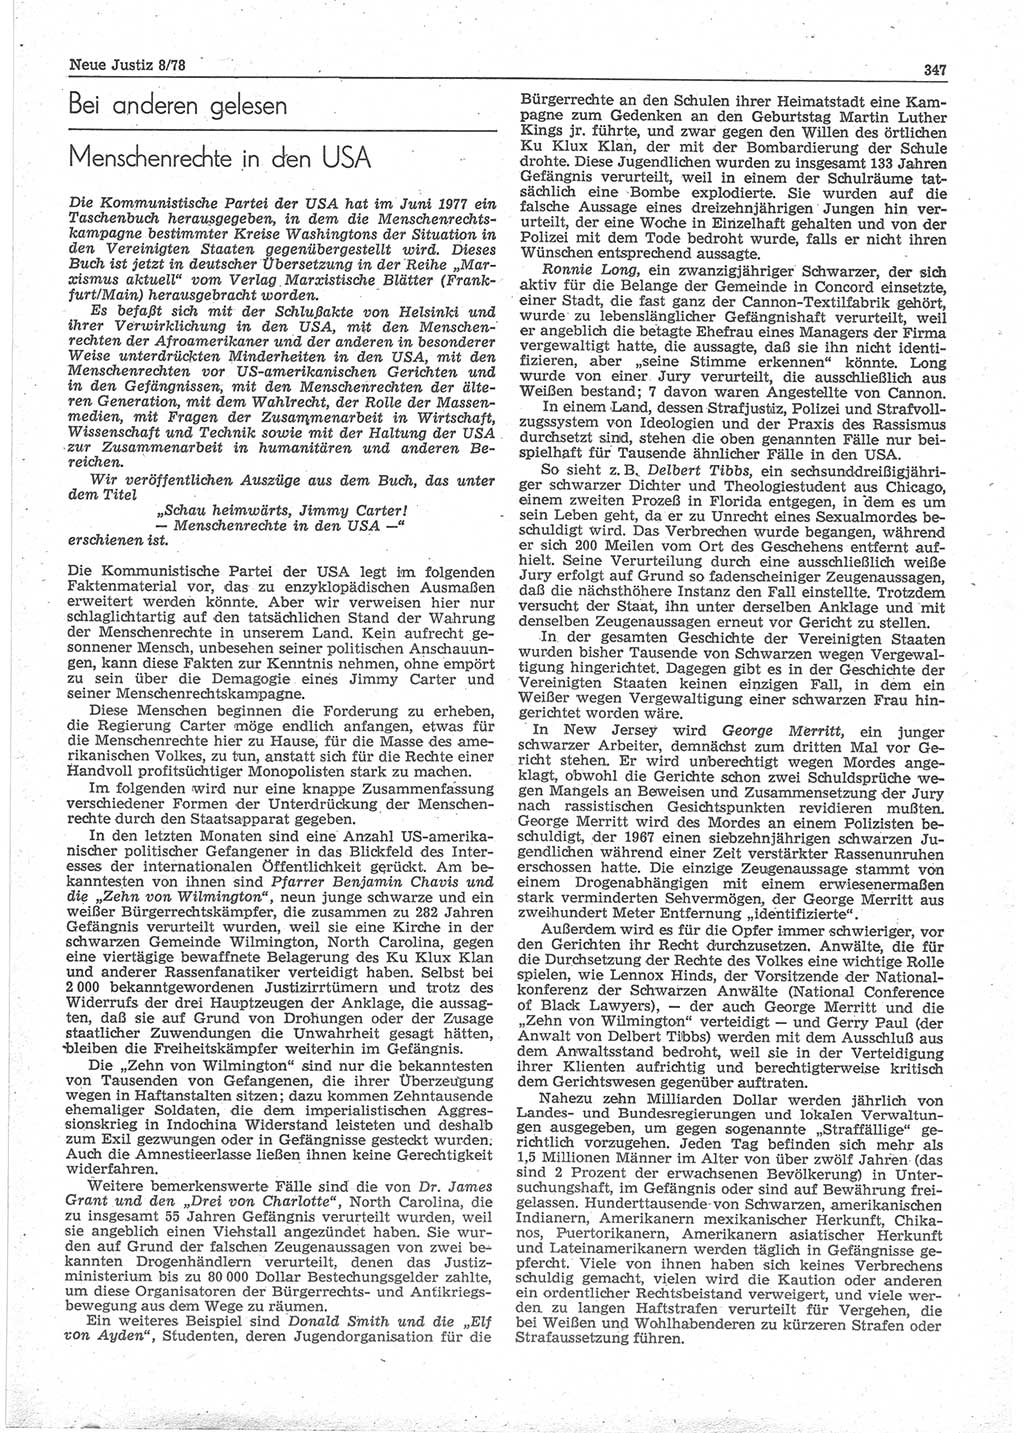 Neue Justiz (NJ), Zeitschrift für sozialistisches Recht und Gesetzlichkeit [Deutsche Demokratische Republik (DDR)], 32. Jahrgang 1978, Seite 347 (NJ DDR 1978, S. 347)